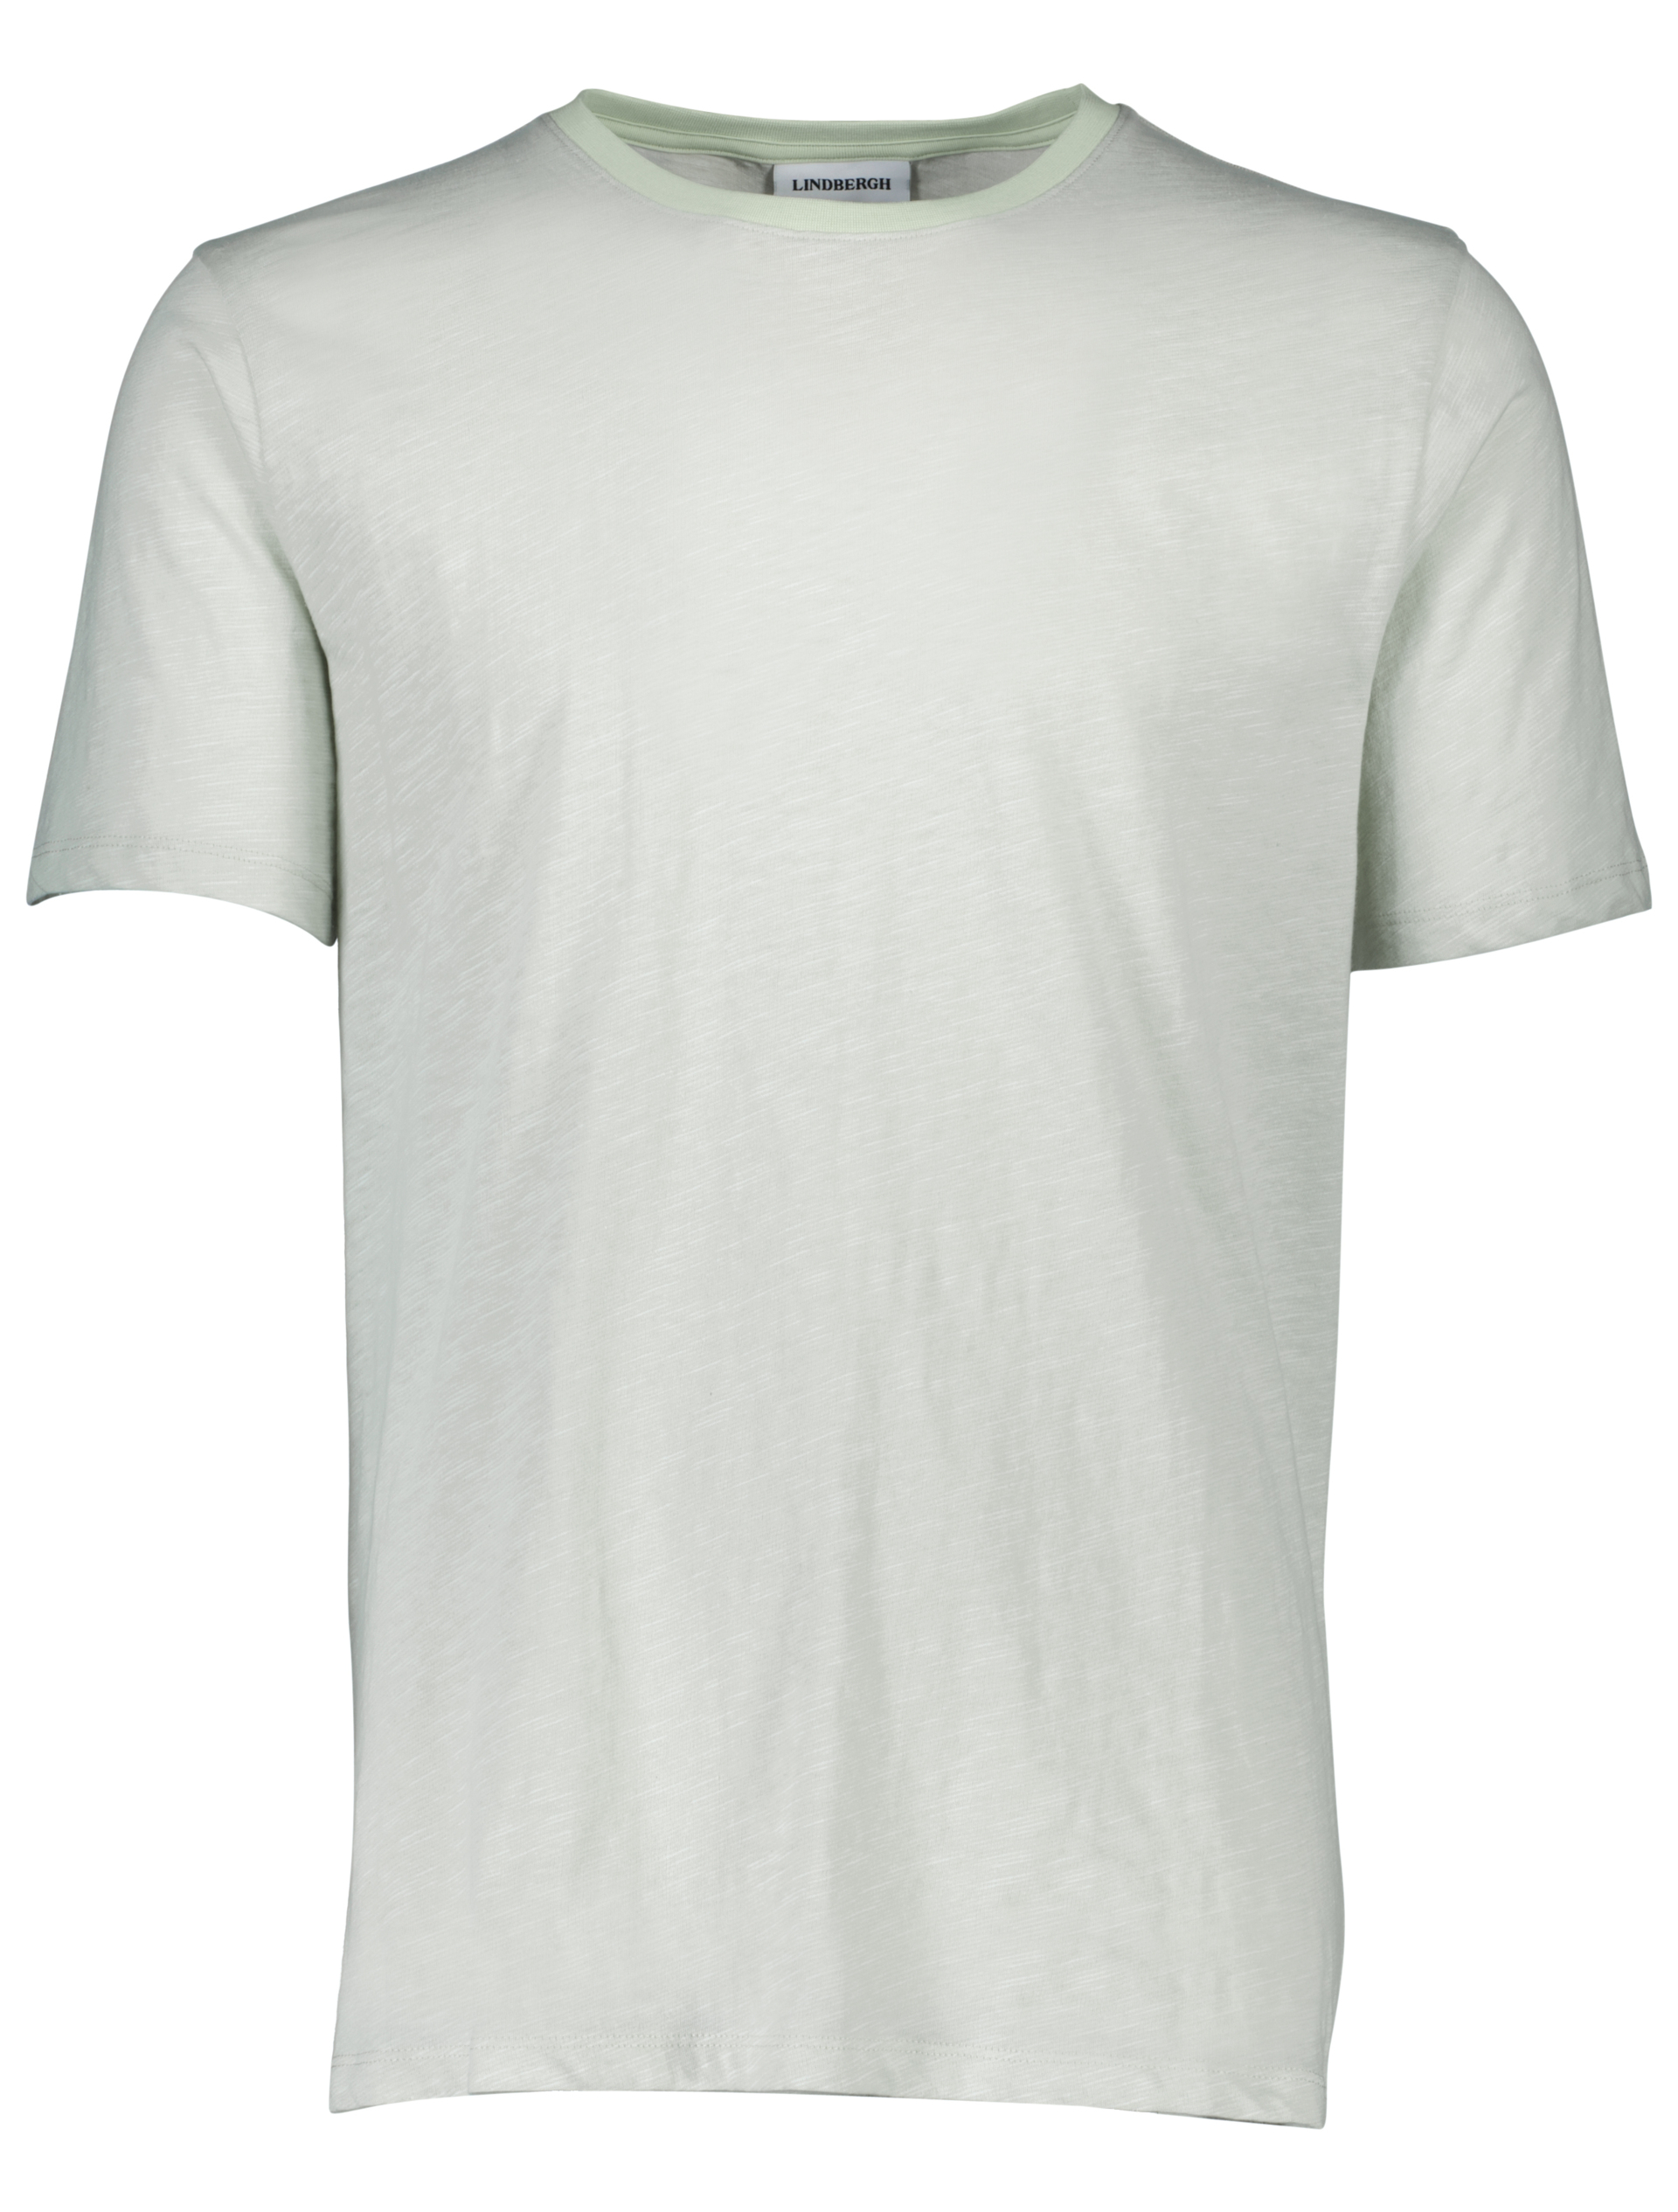 Lindbergh T-shirt groen / mint